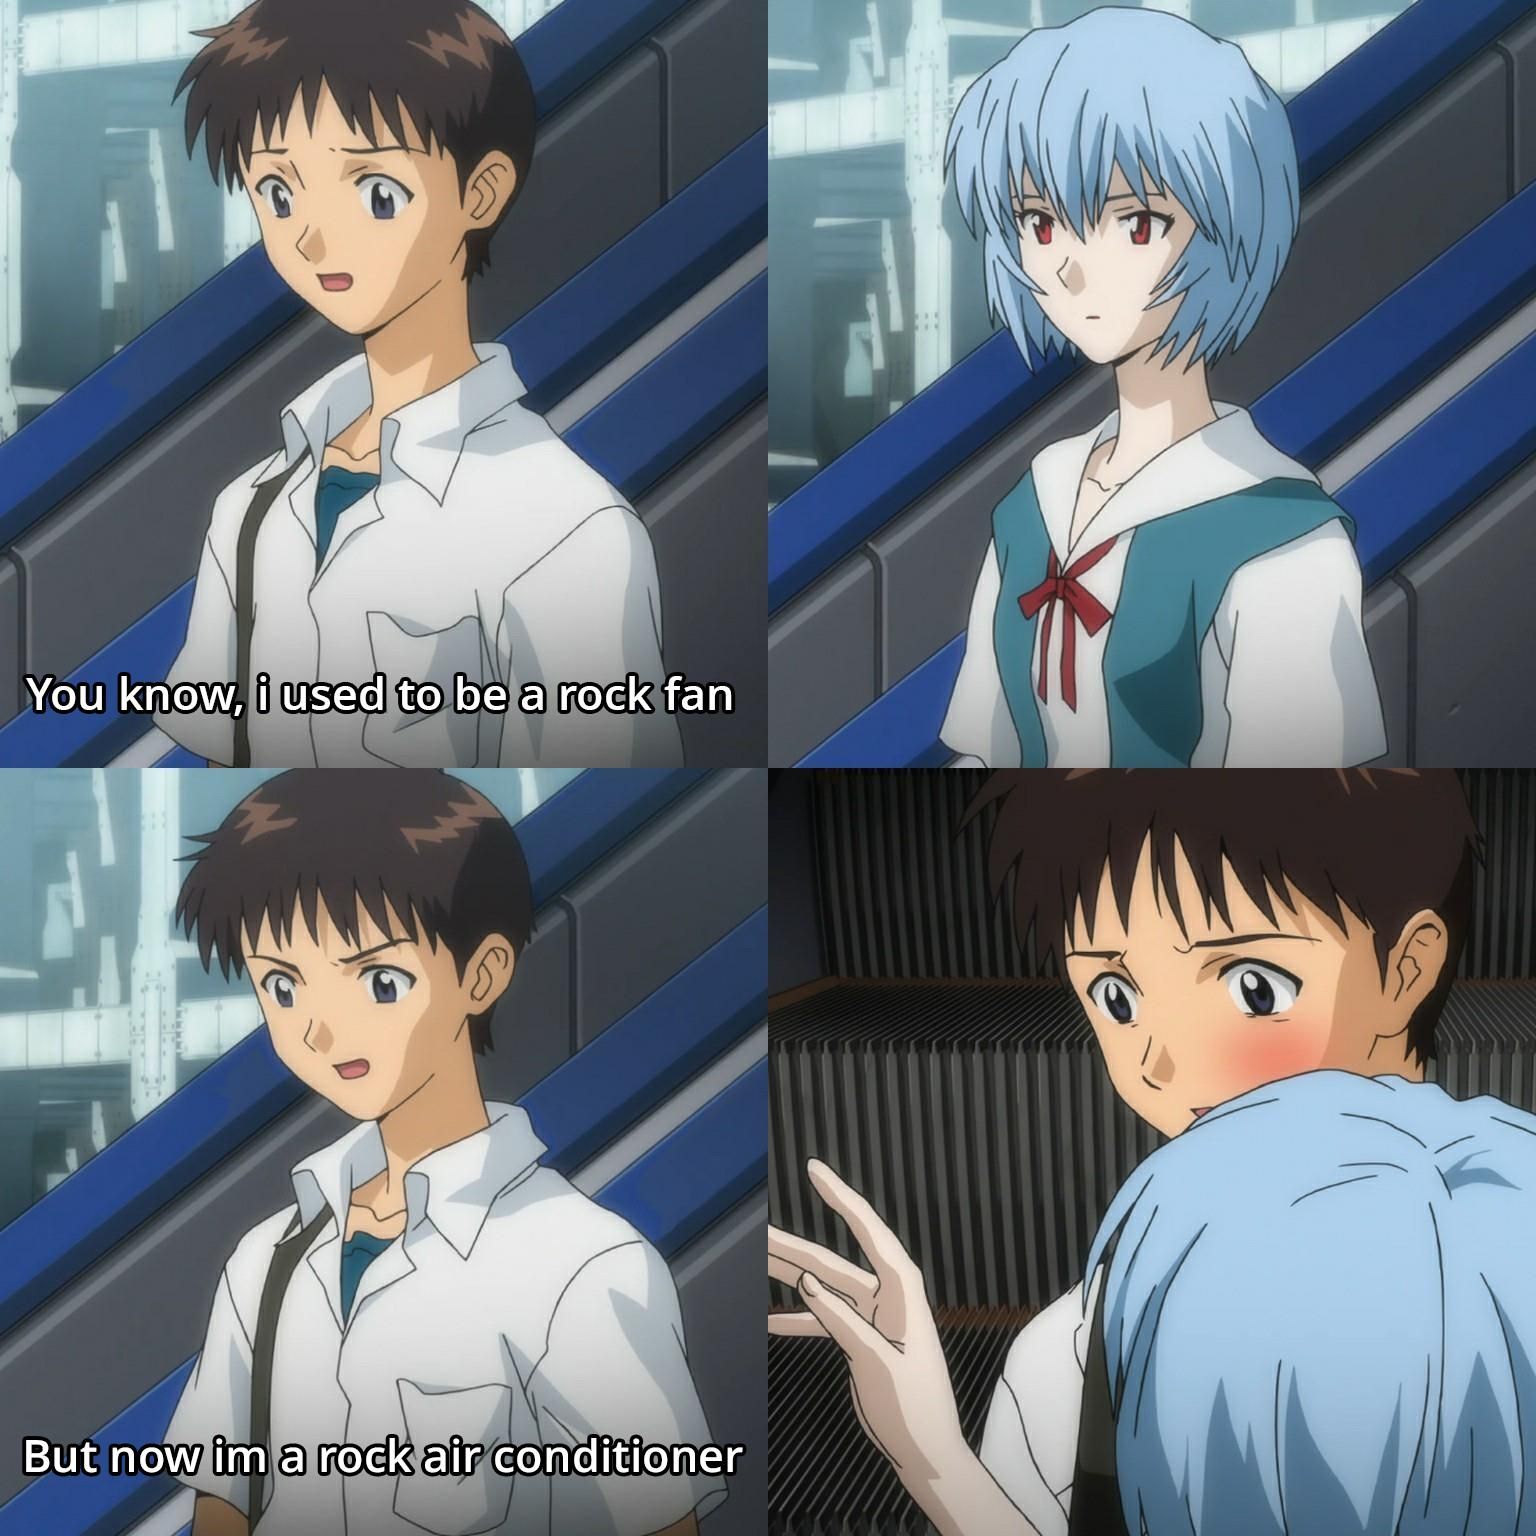 Shinji's dad joke